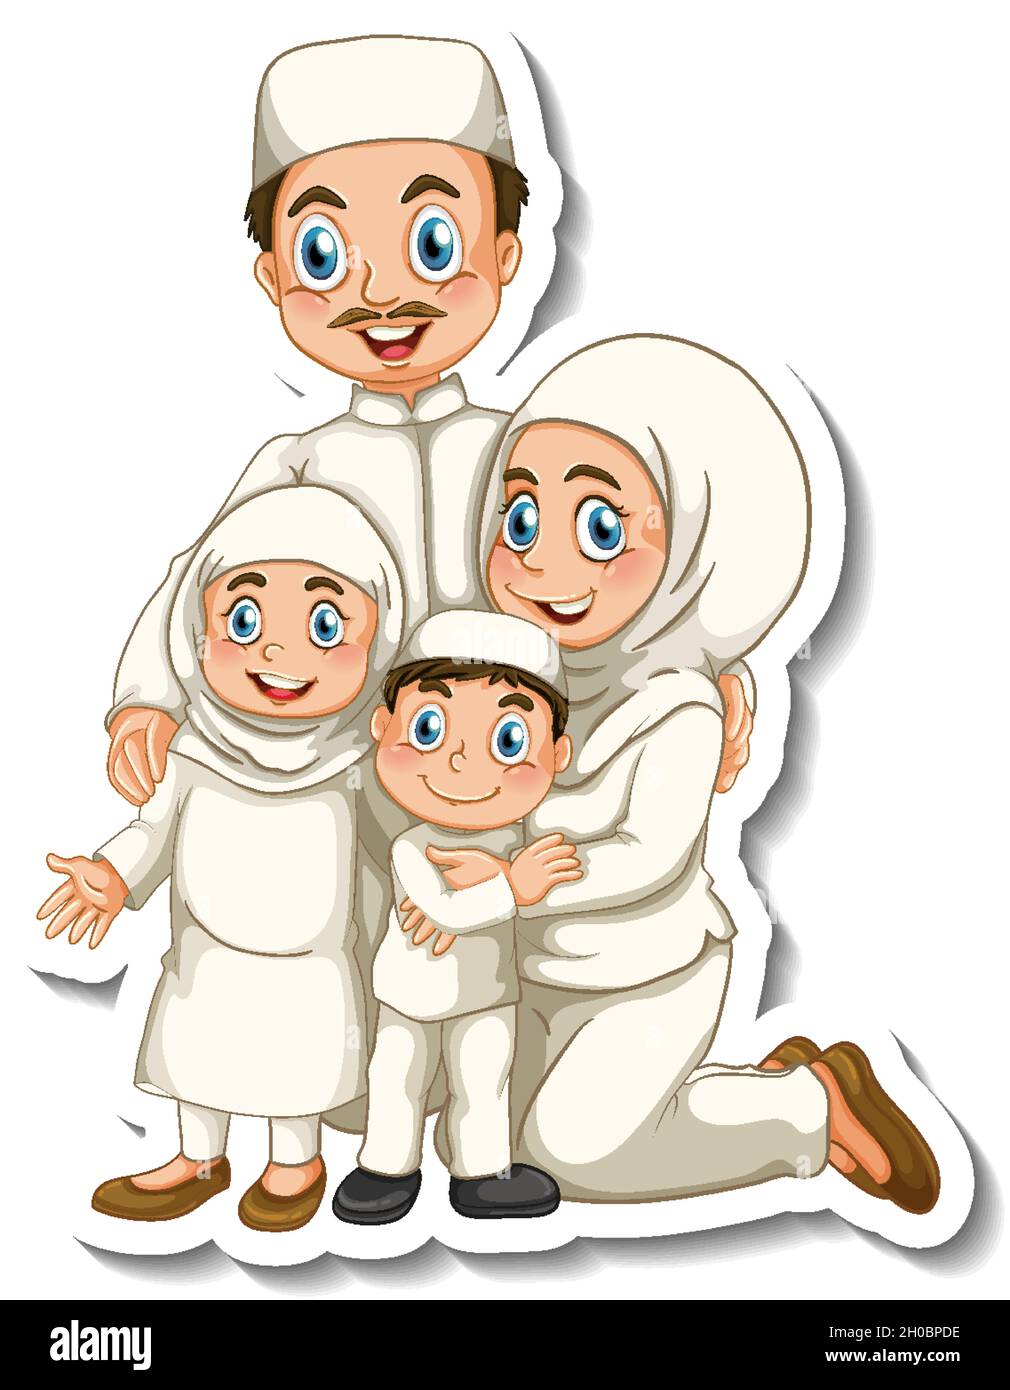 Gambar Kartun Keluarga Muslim Bahagia